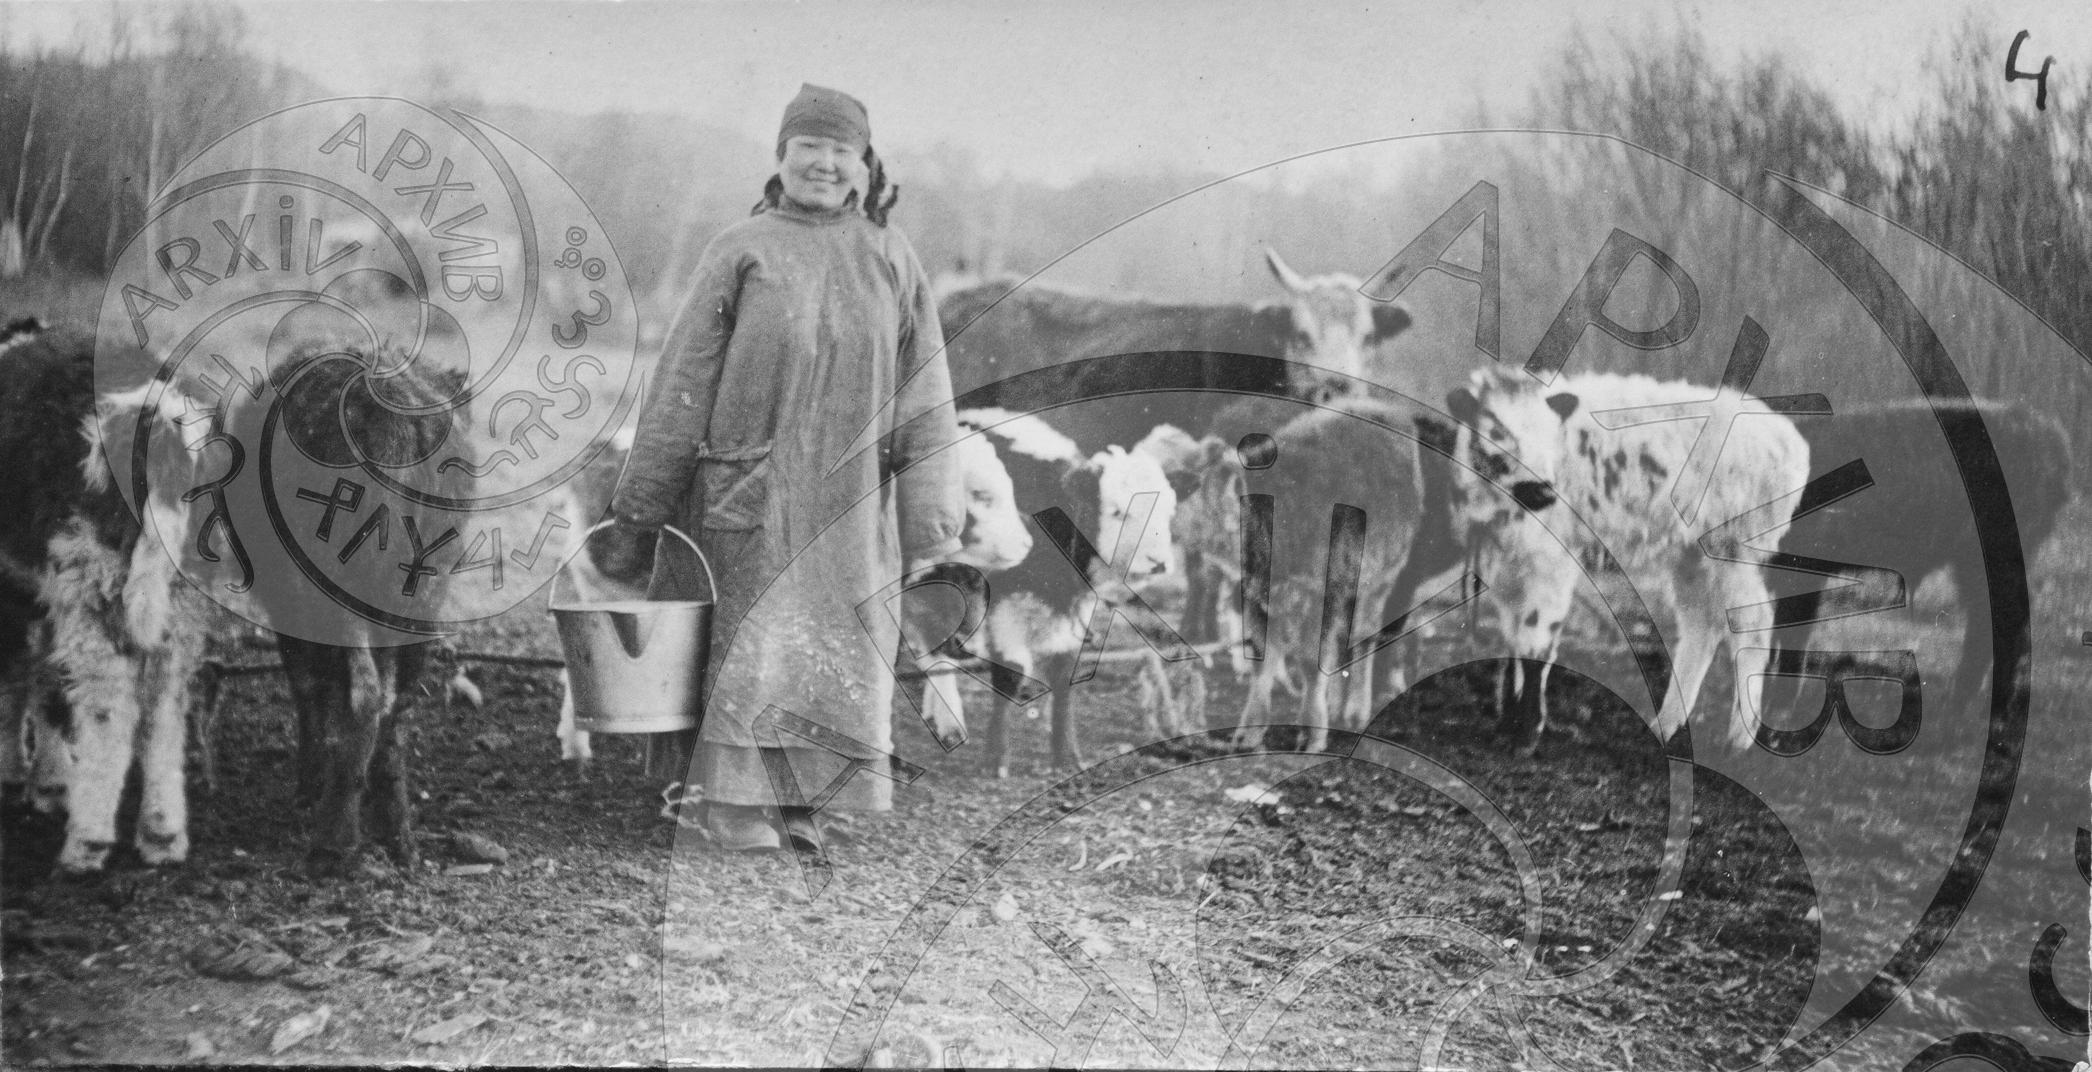 Стадо дойных коров, подавляющее большинство которых составляют коровы "телятницы", дающие молоко в присутствии теленка, которого подпускали к корове во время дойки